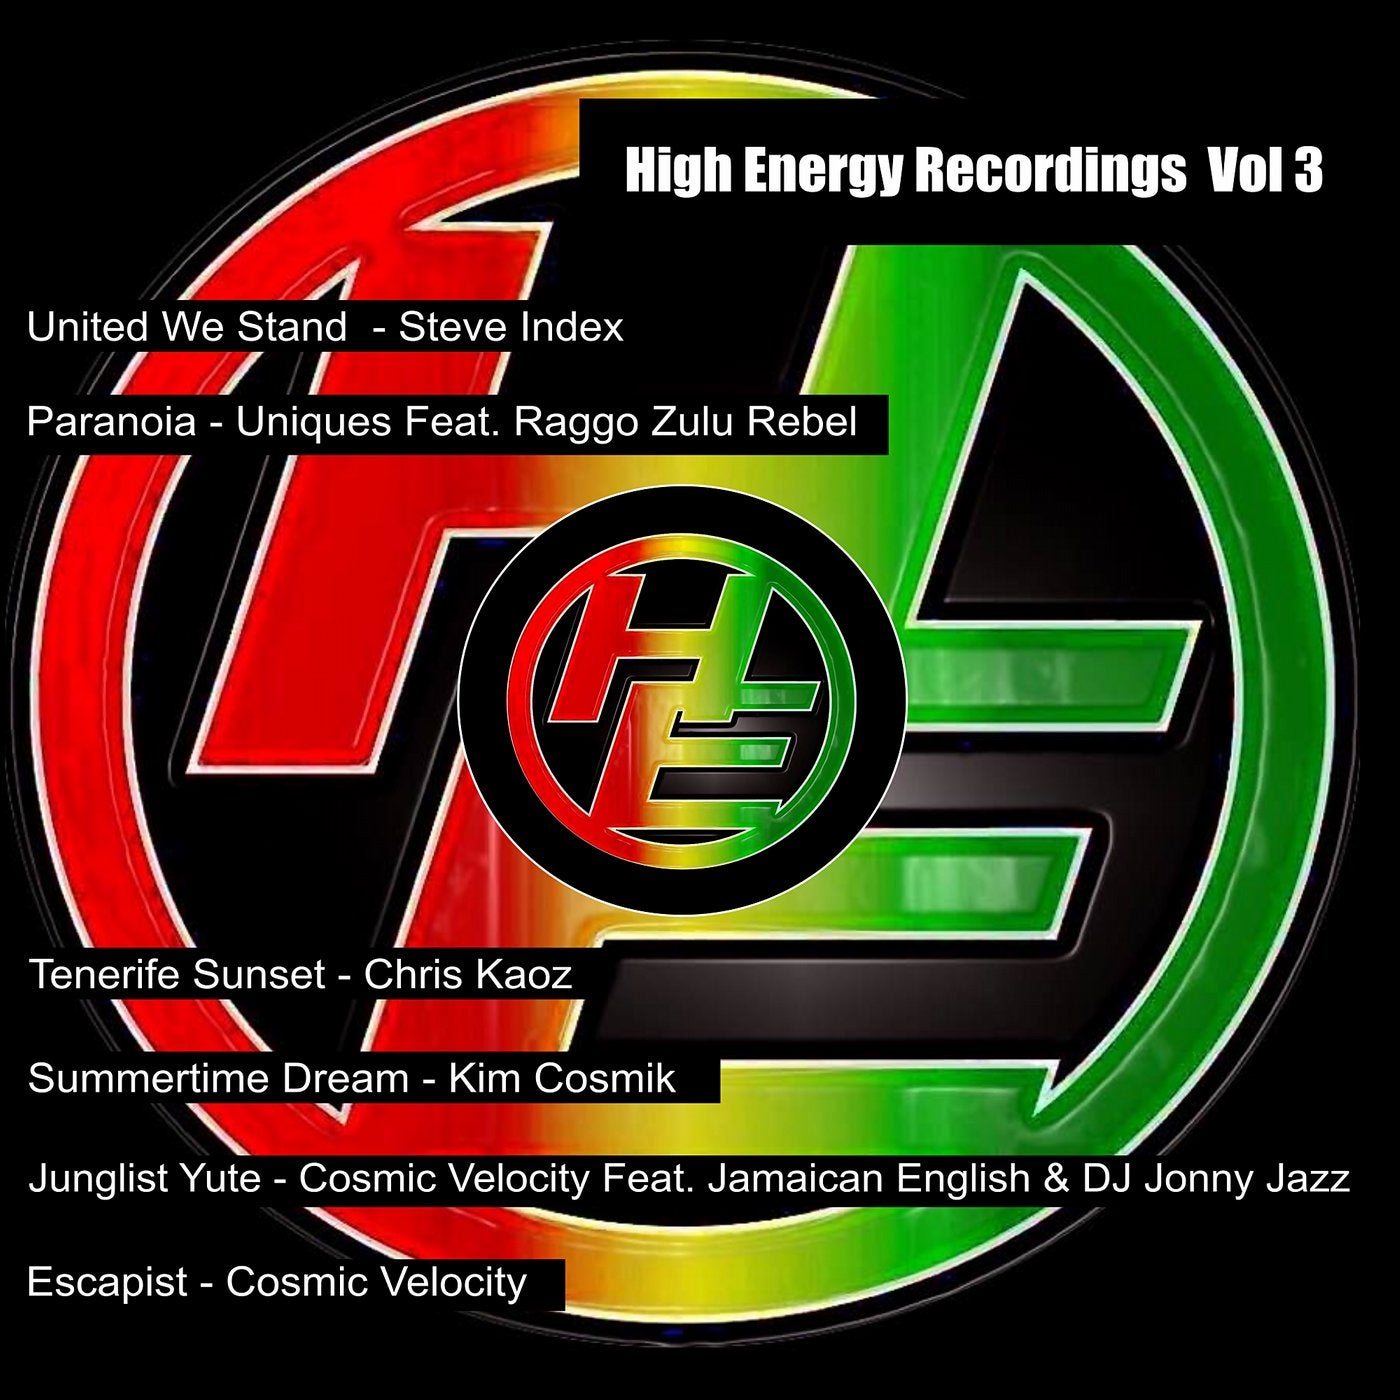 High Energy Recordings Vol 3